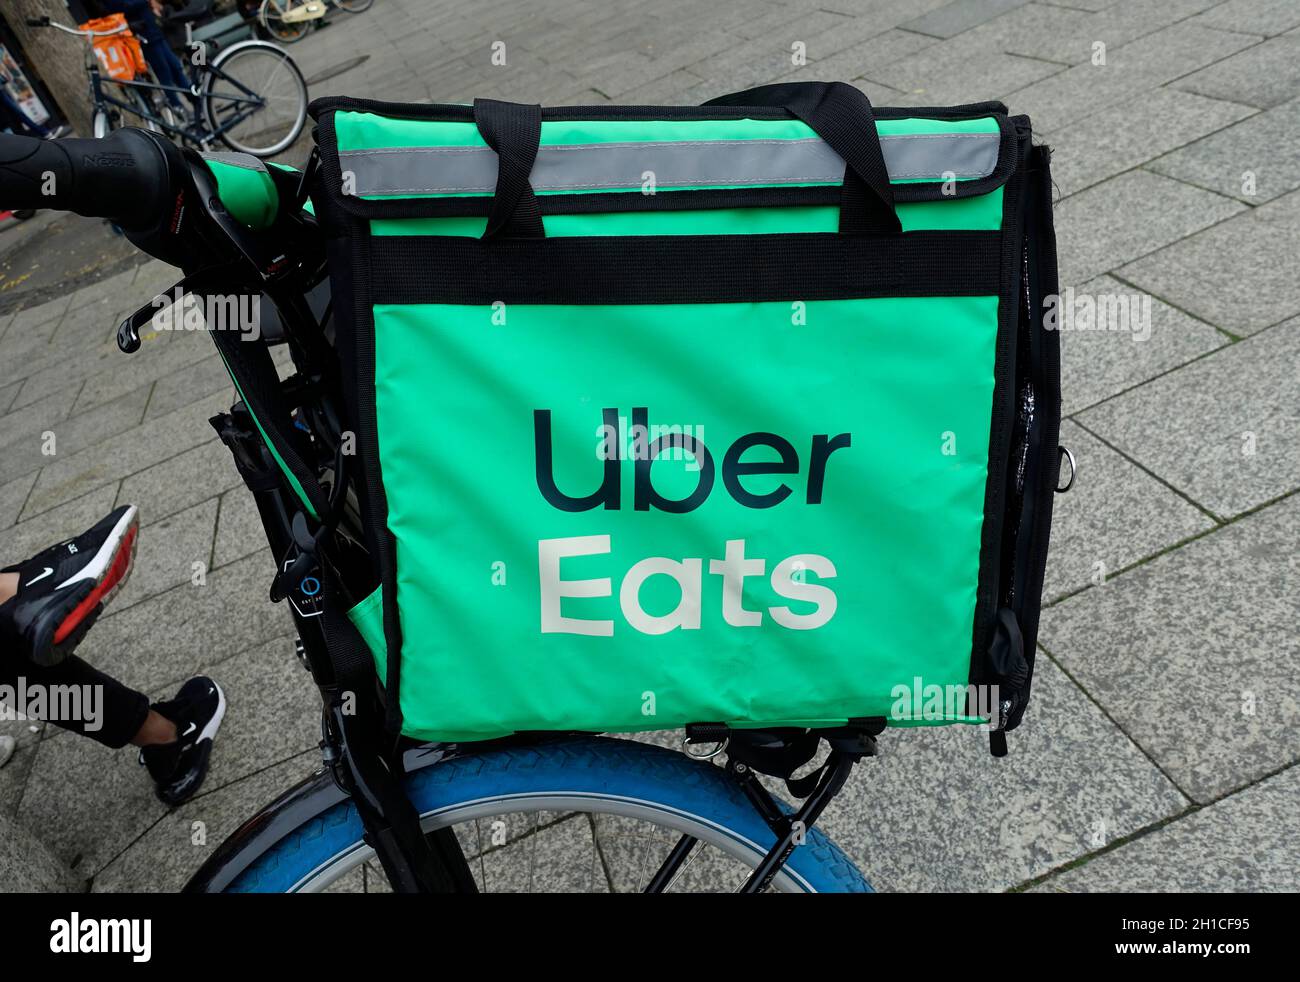 Bike of Uber eats, Berlin, Germany Stock Photo